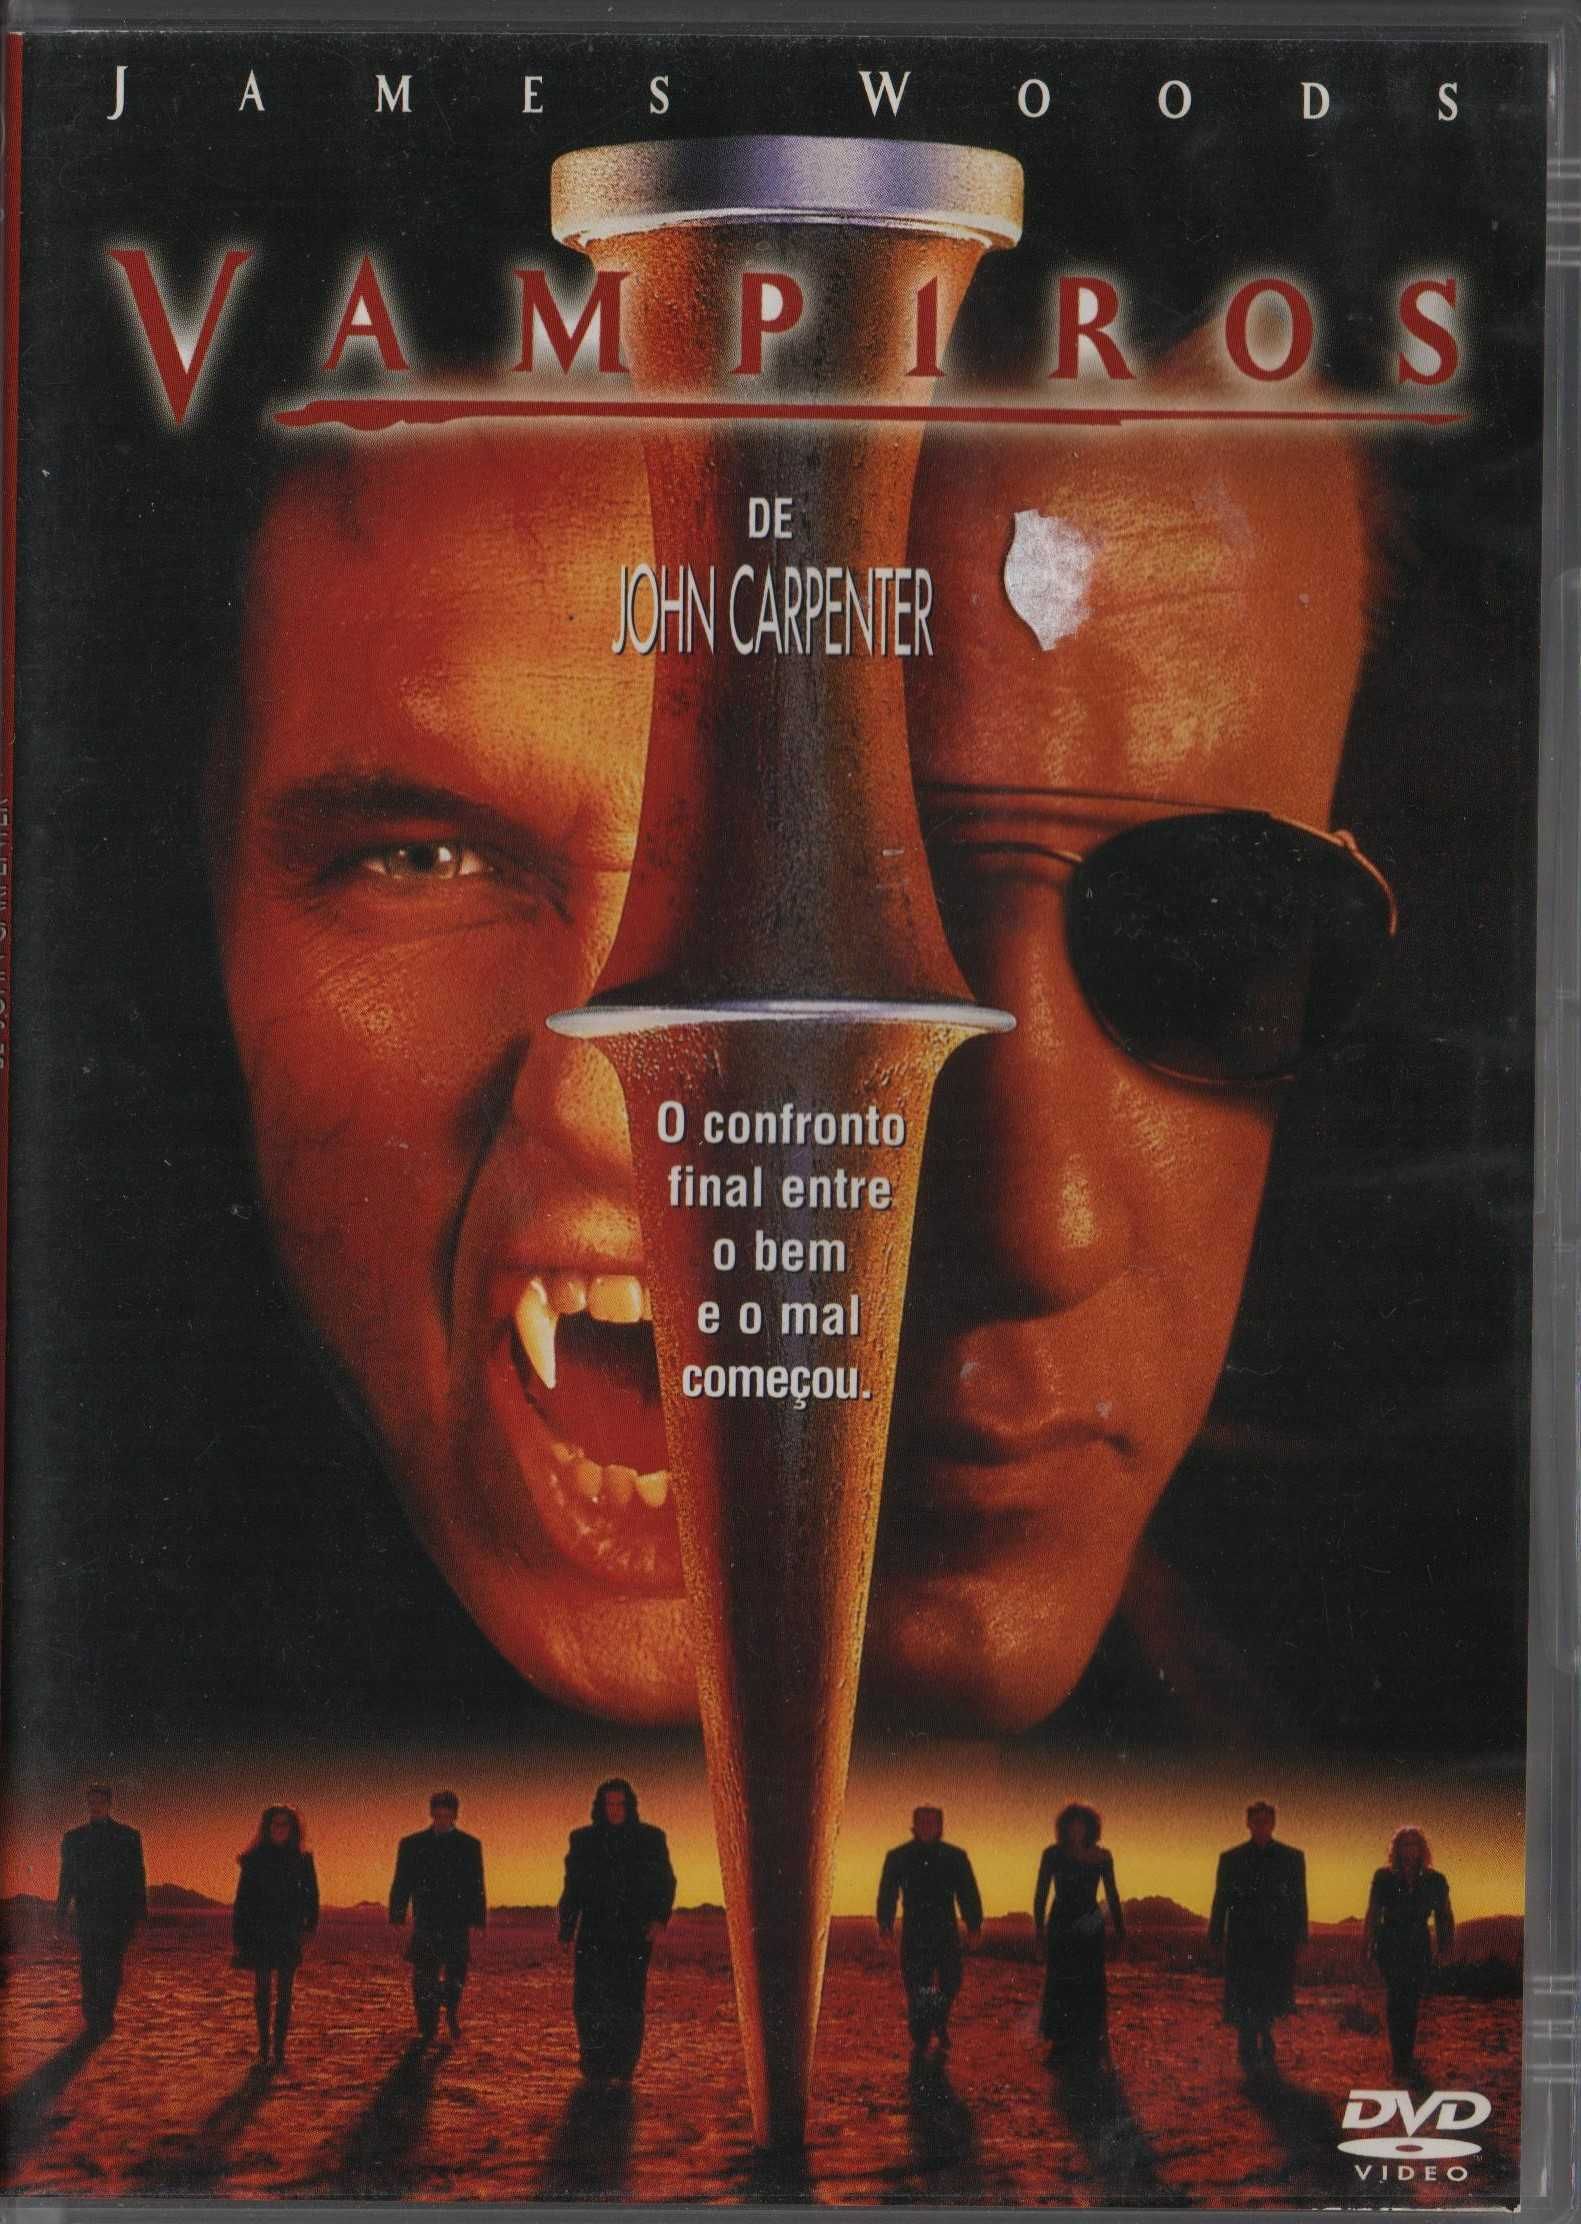 Dvd Vampiros - terror - John Carpenter - James Woods - extras